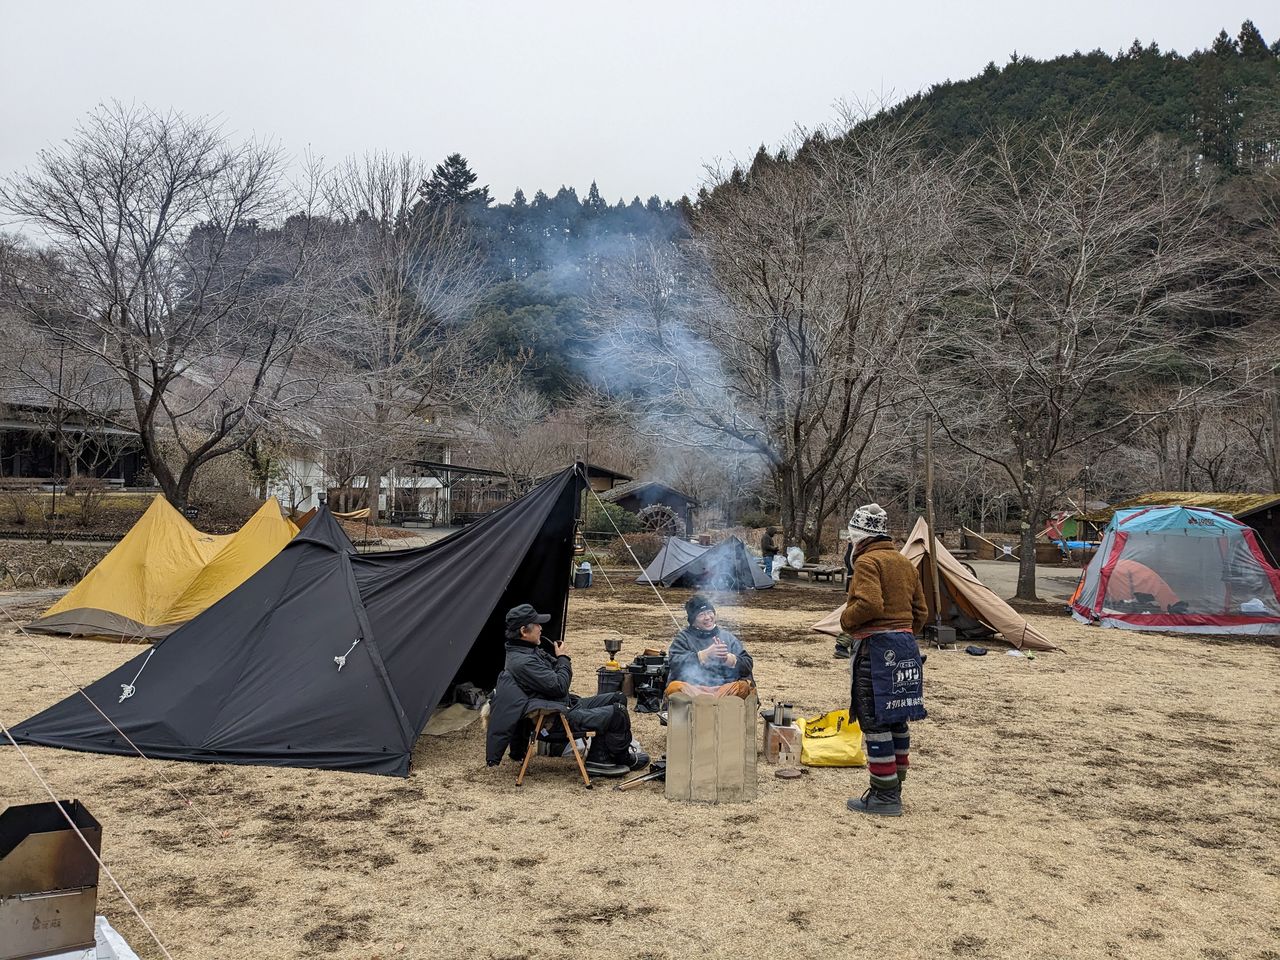 Le camping d'automne et d'hiver rencontre de plus en plus de succès, car il y a moins d'insectes, permettant de mieux profiter des feux de camp et de la cuisine en plein air. (© Sakurai Nobuki)